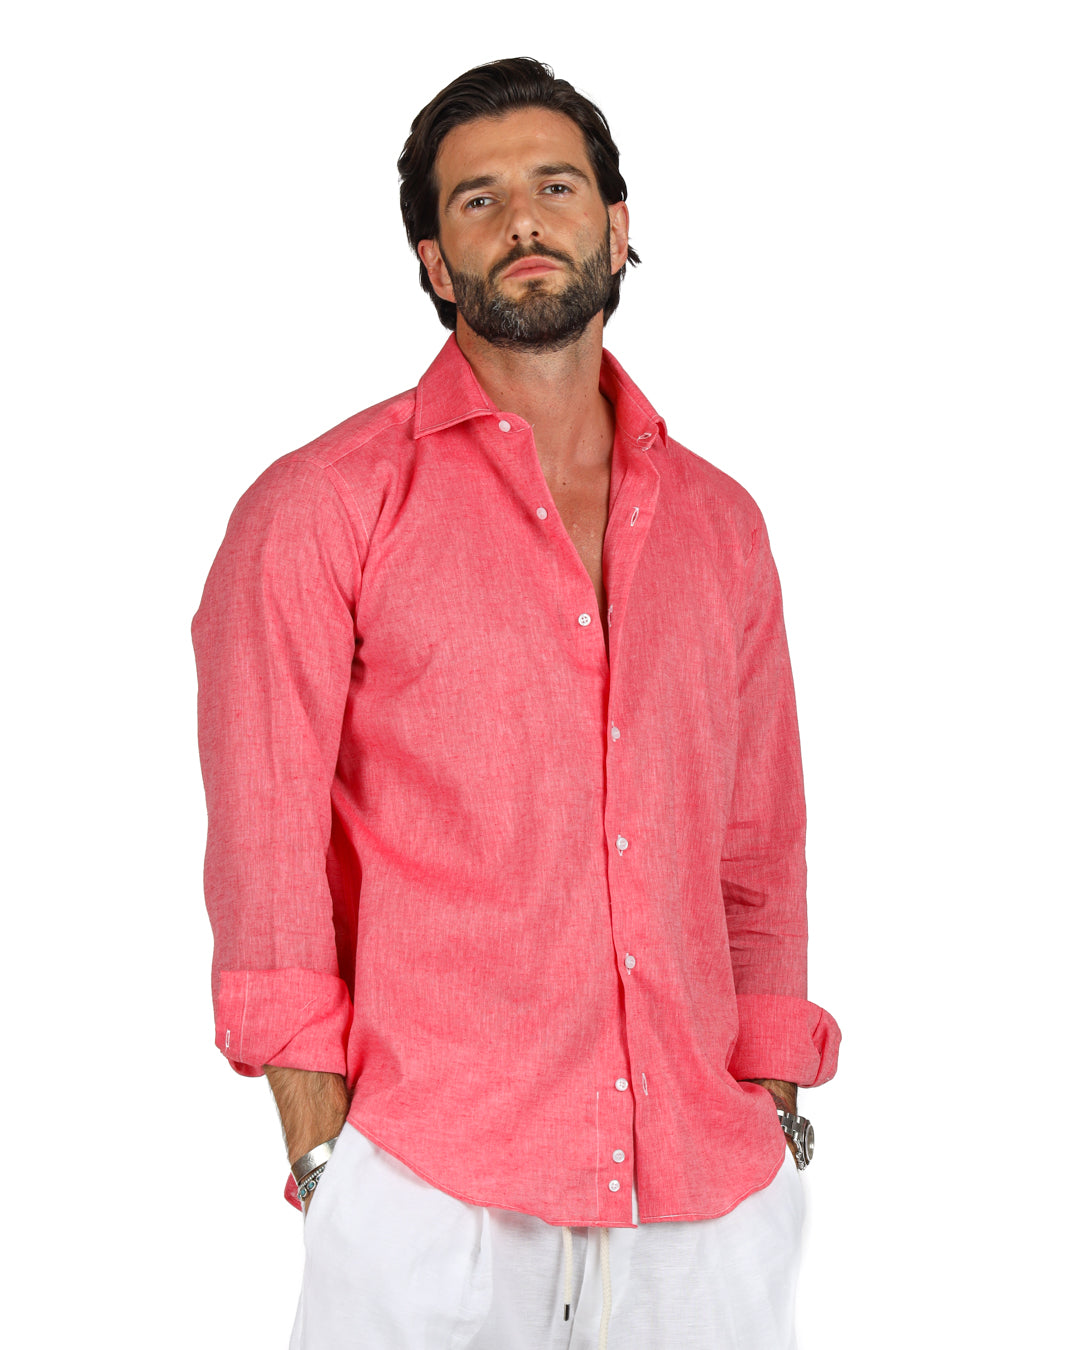 Praiano - La chemise classique en lin corail